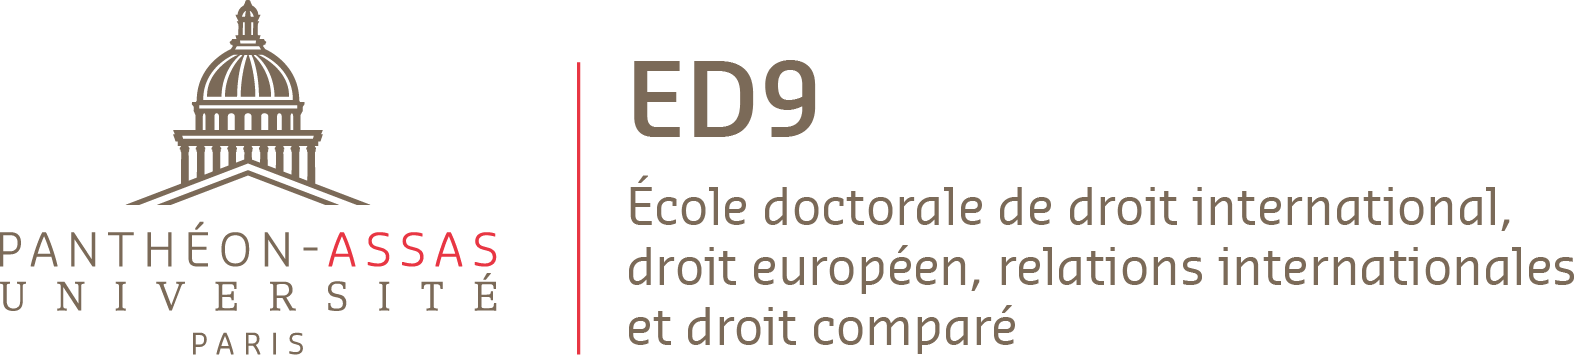 Logo de l'ED 9